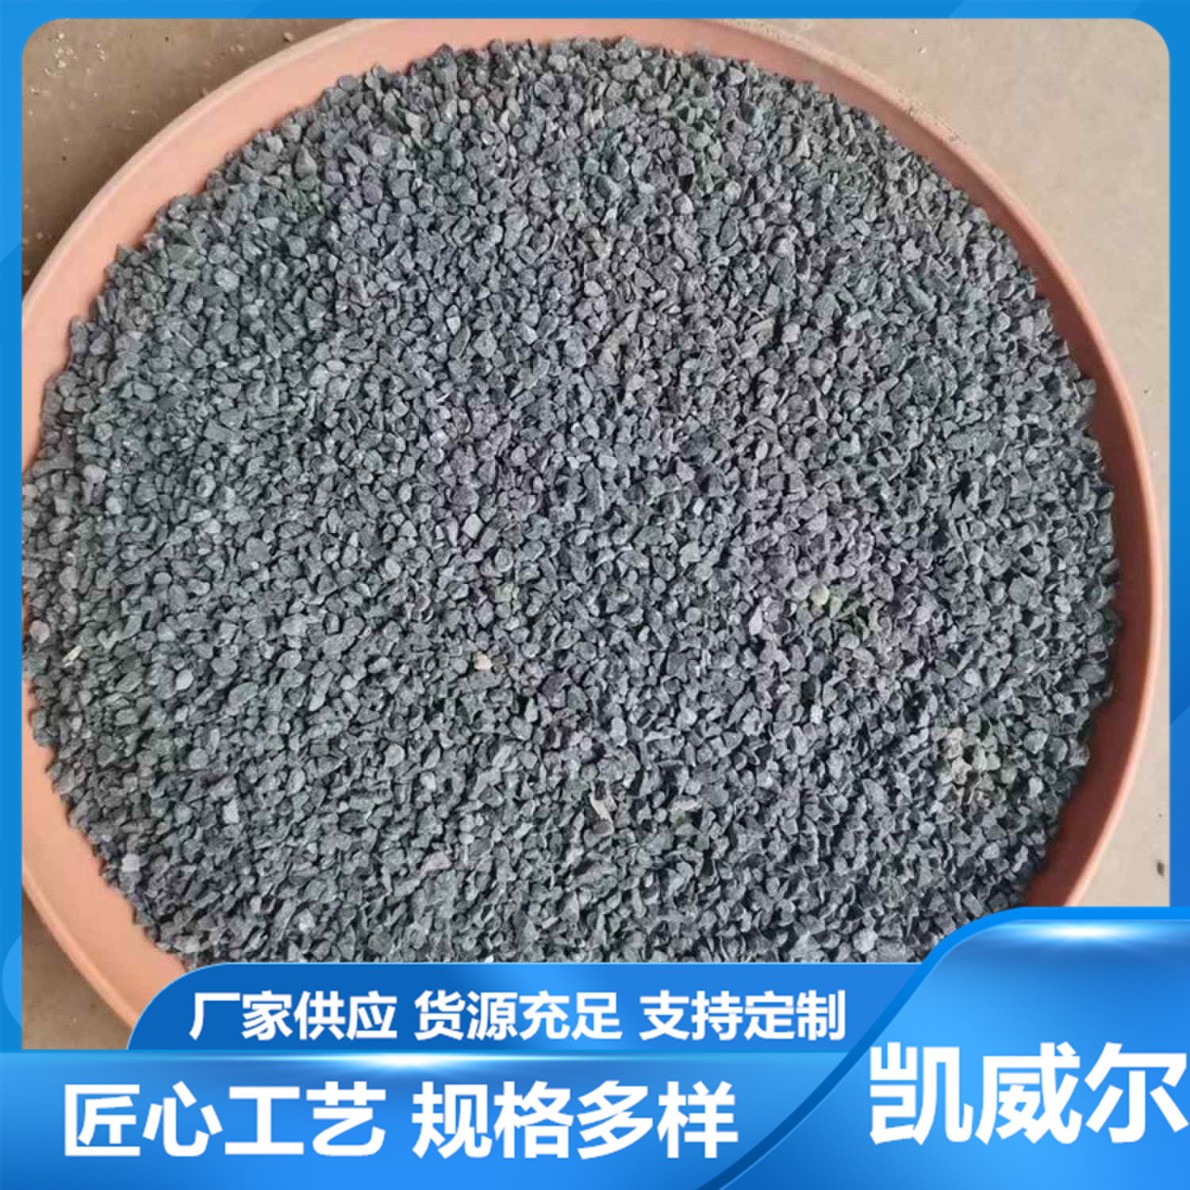 石英砂-厂家生产1至8毫米石英砂-雪花白砂-青岛-潍坊-莱州-多地可售